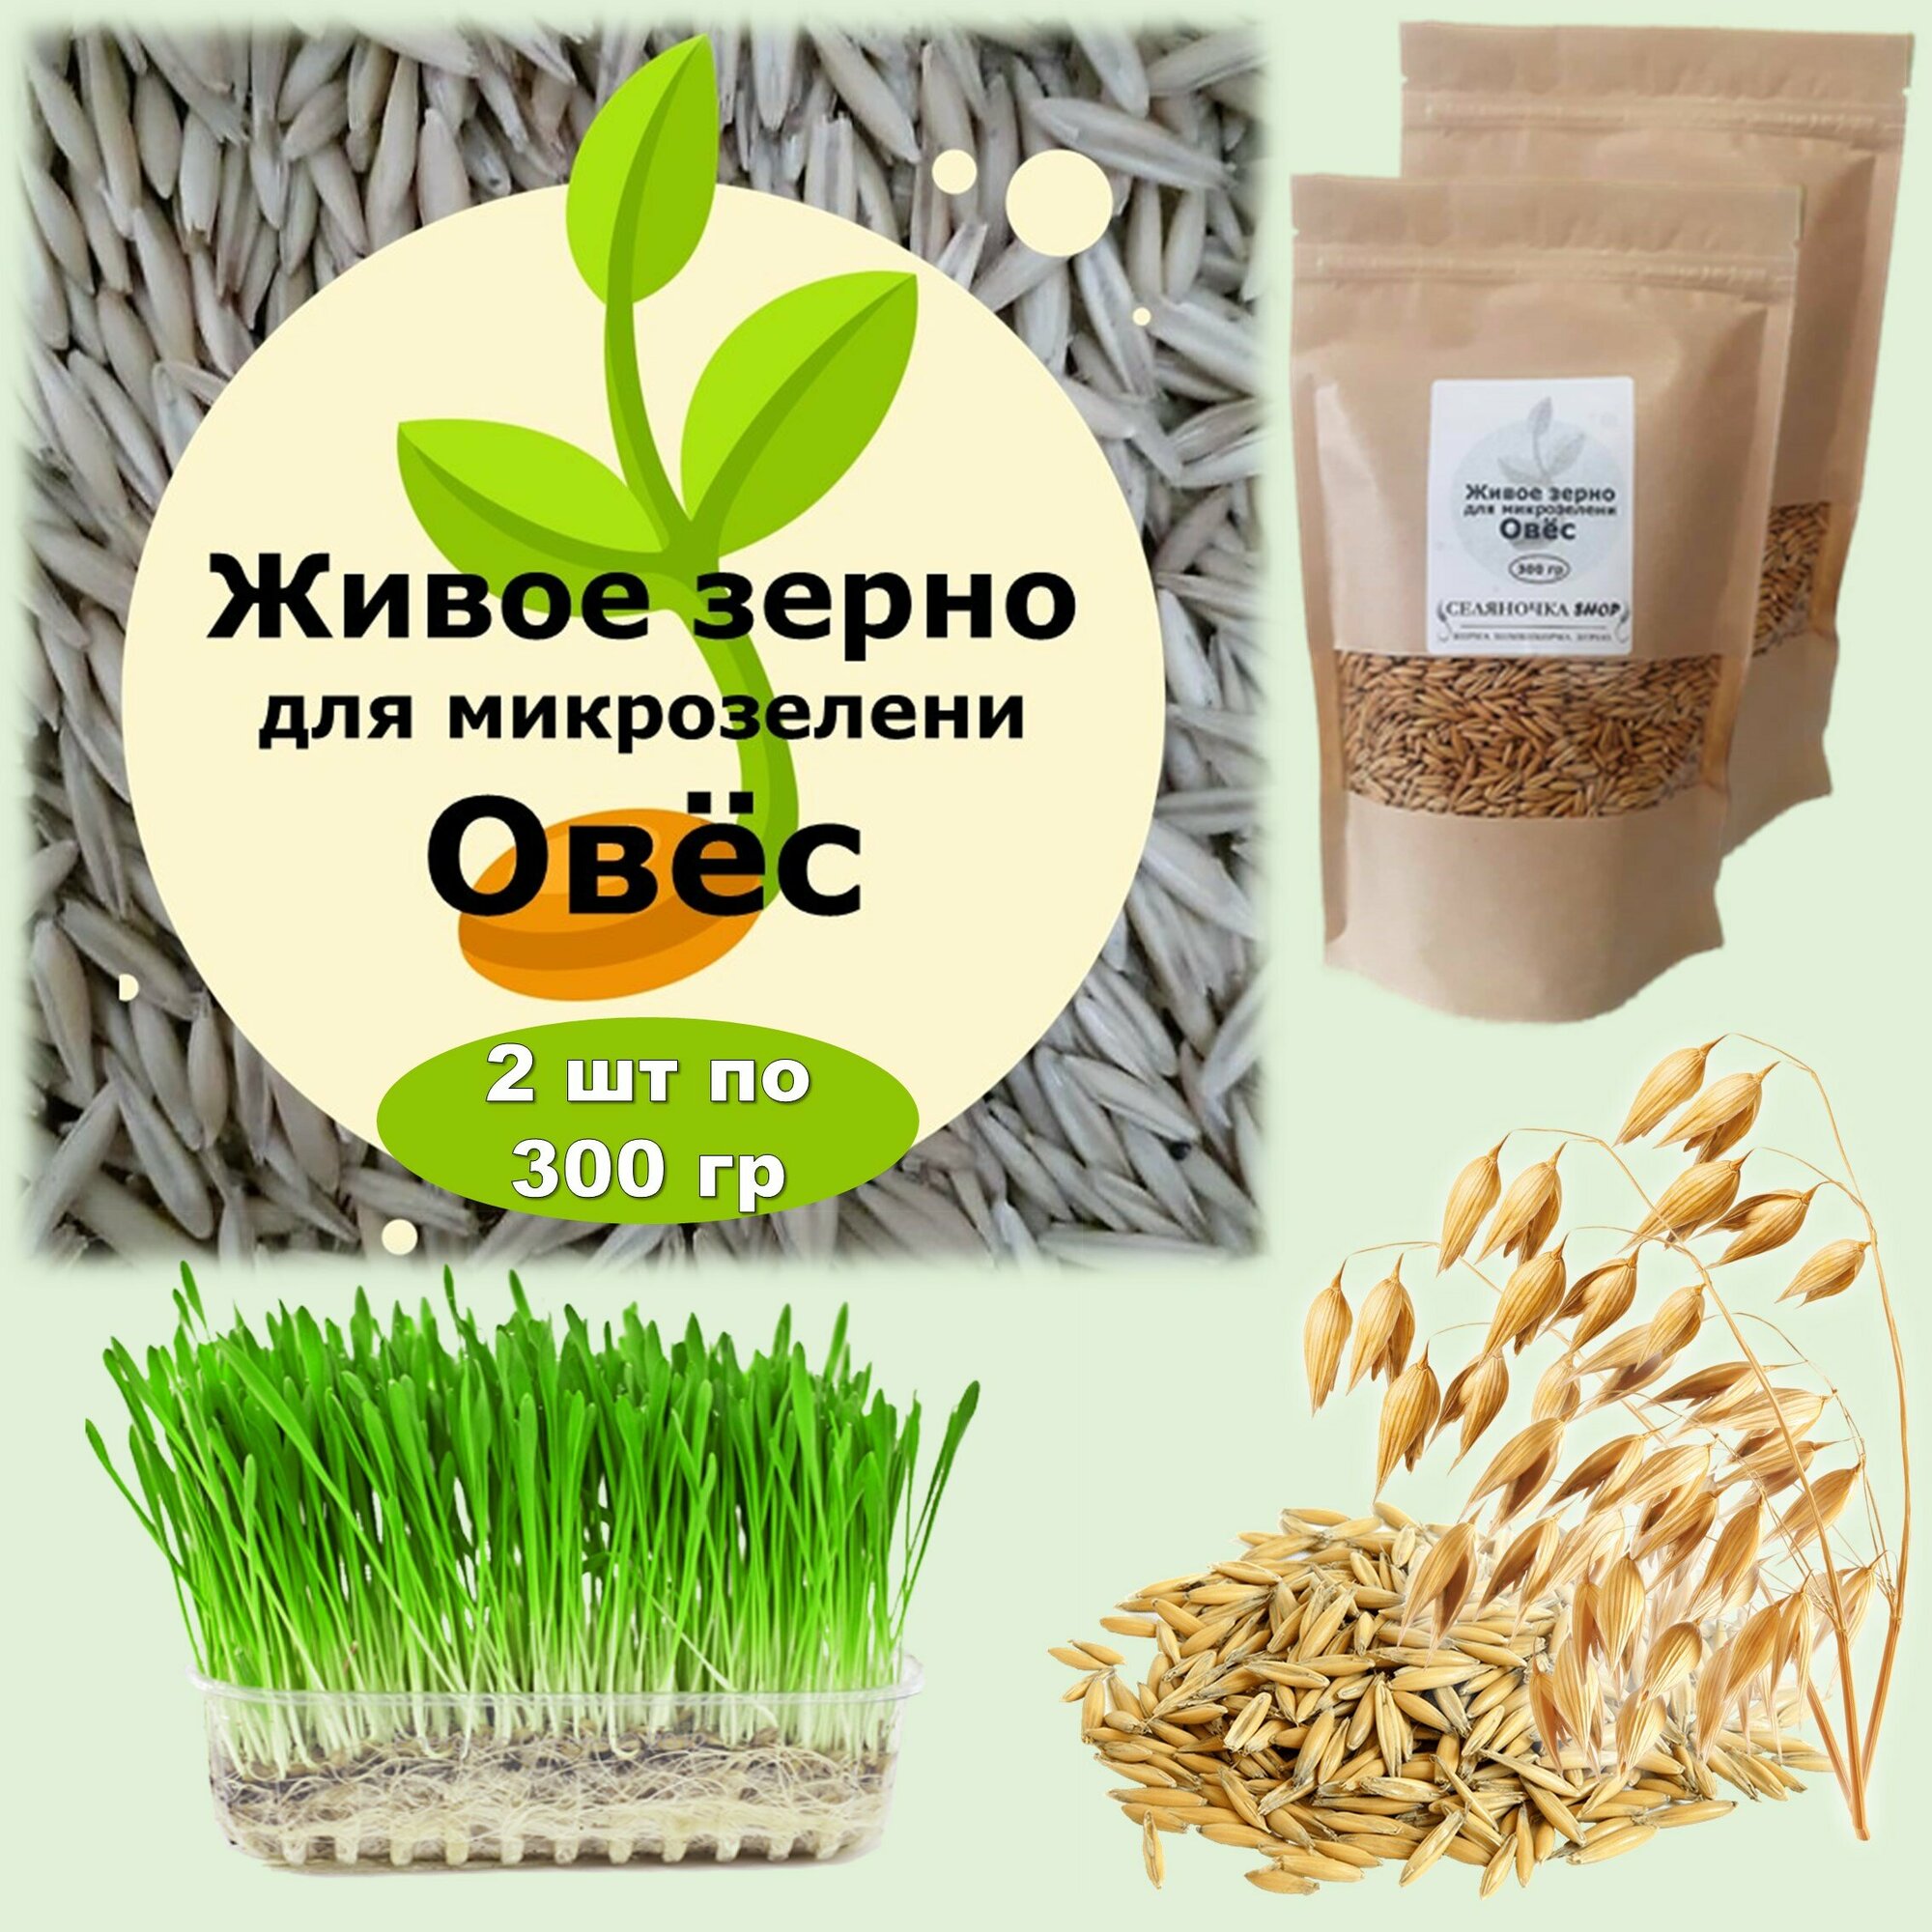 Семена для микрозелени "Живое зерно" Овёс, 2 штуки по 300 гр